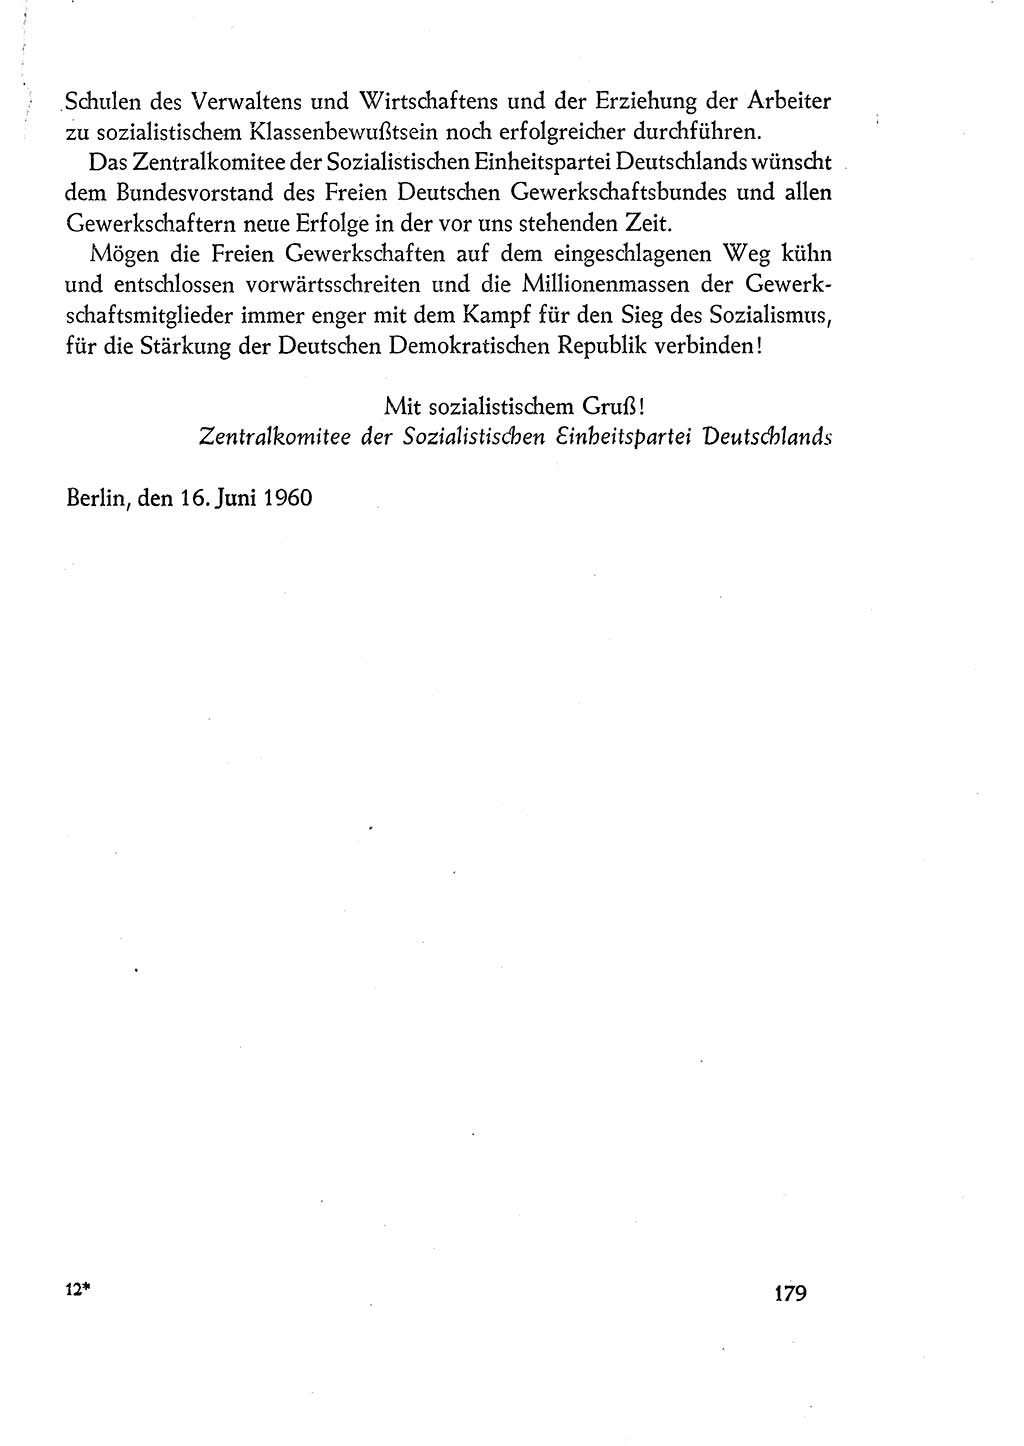 Dokumente der Sozialistischen Einheitspartei Deutschlands (SED) [Deutsche Demokratische Republik (DDR)] 1960-1961, Seite 179 (Dok. SED DDR 1960-1961, S. 179)